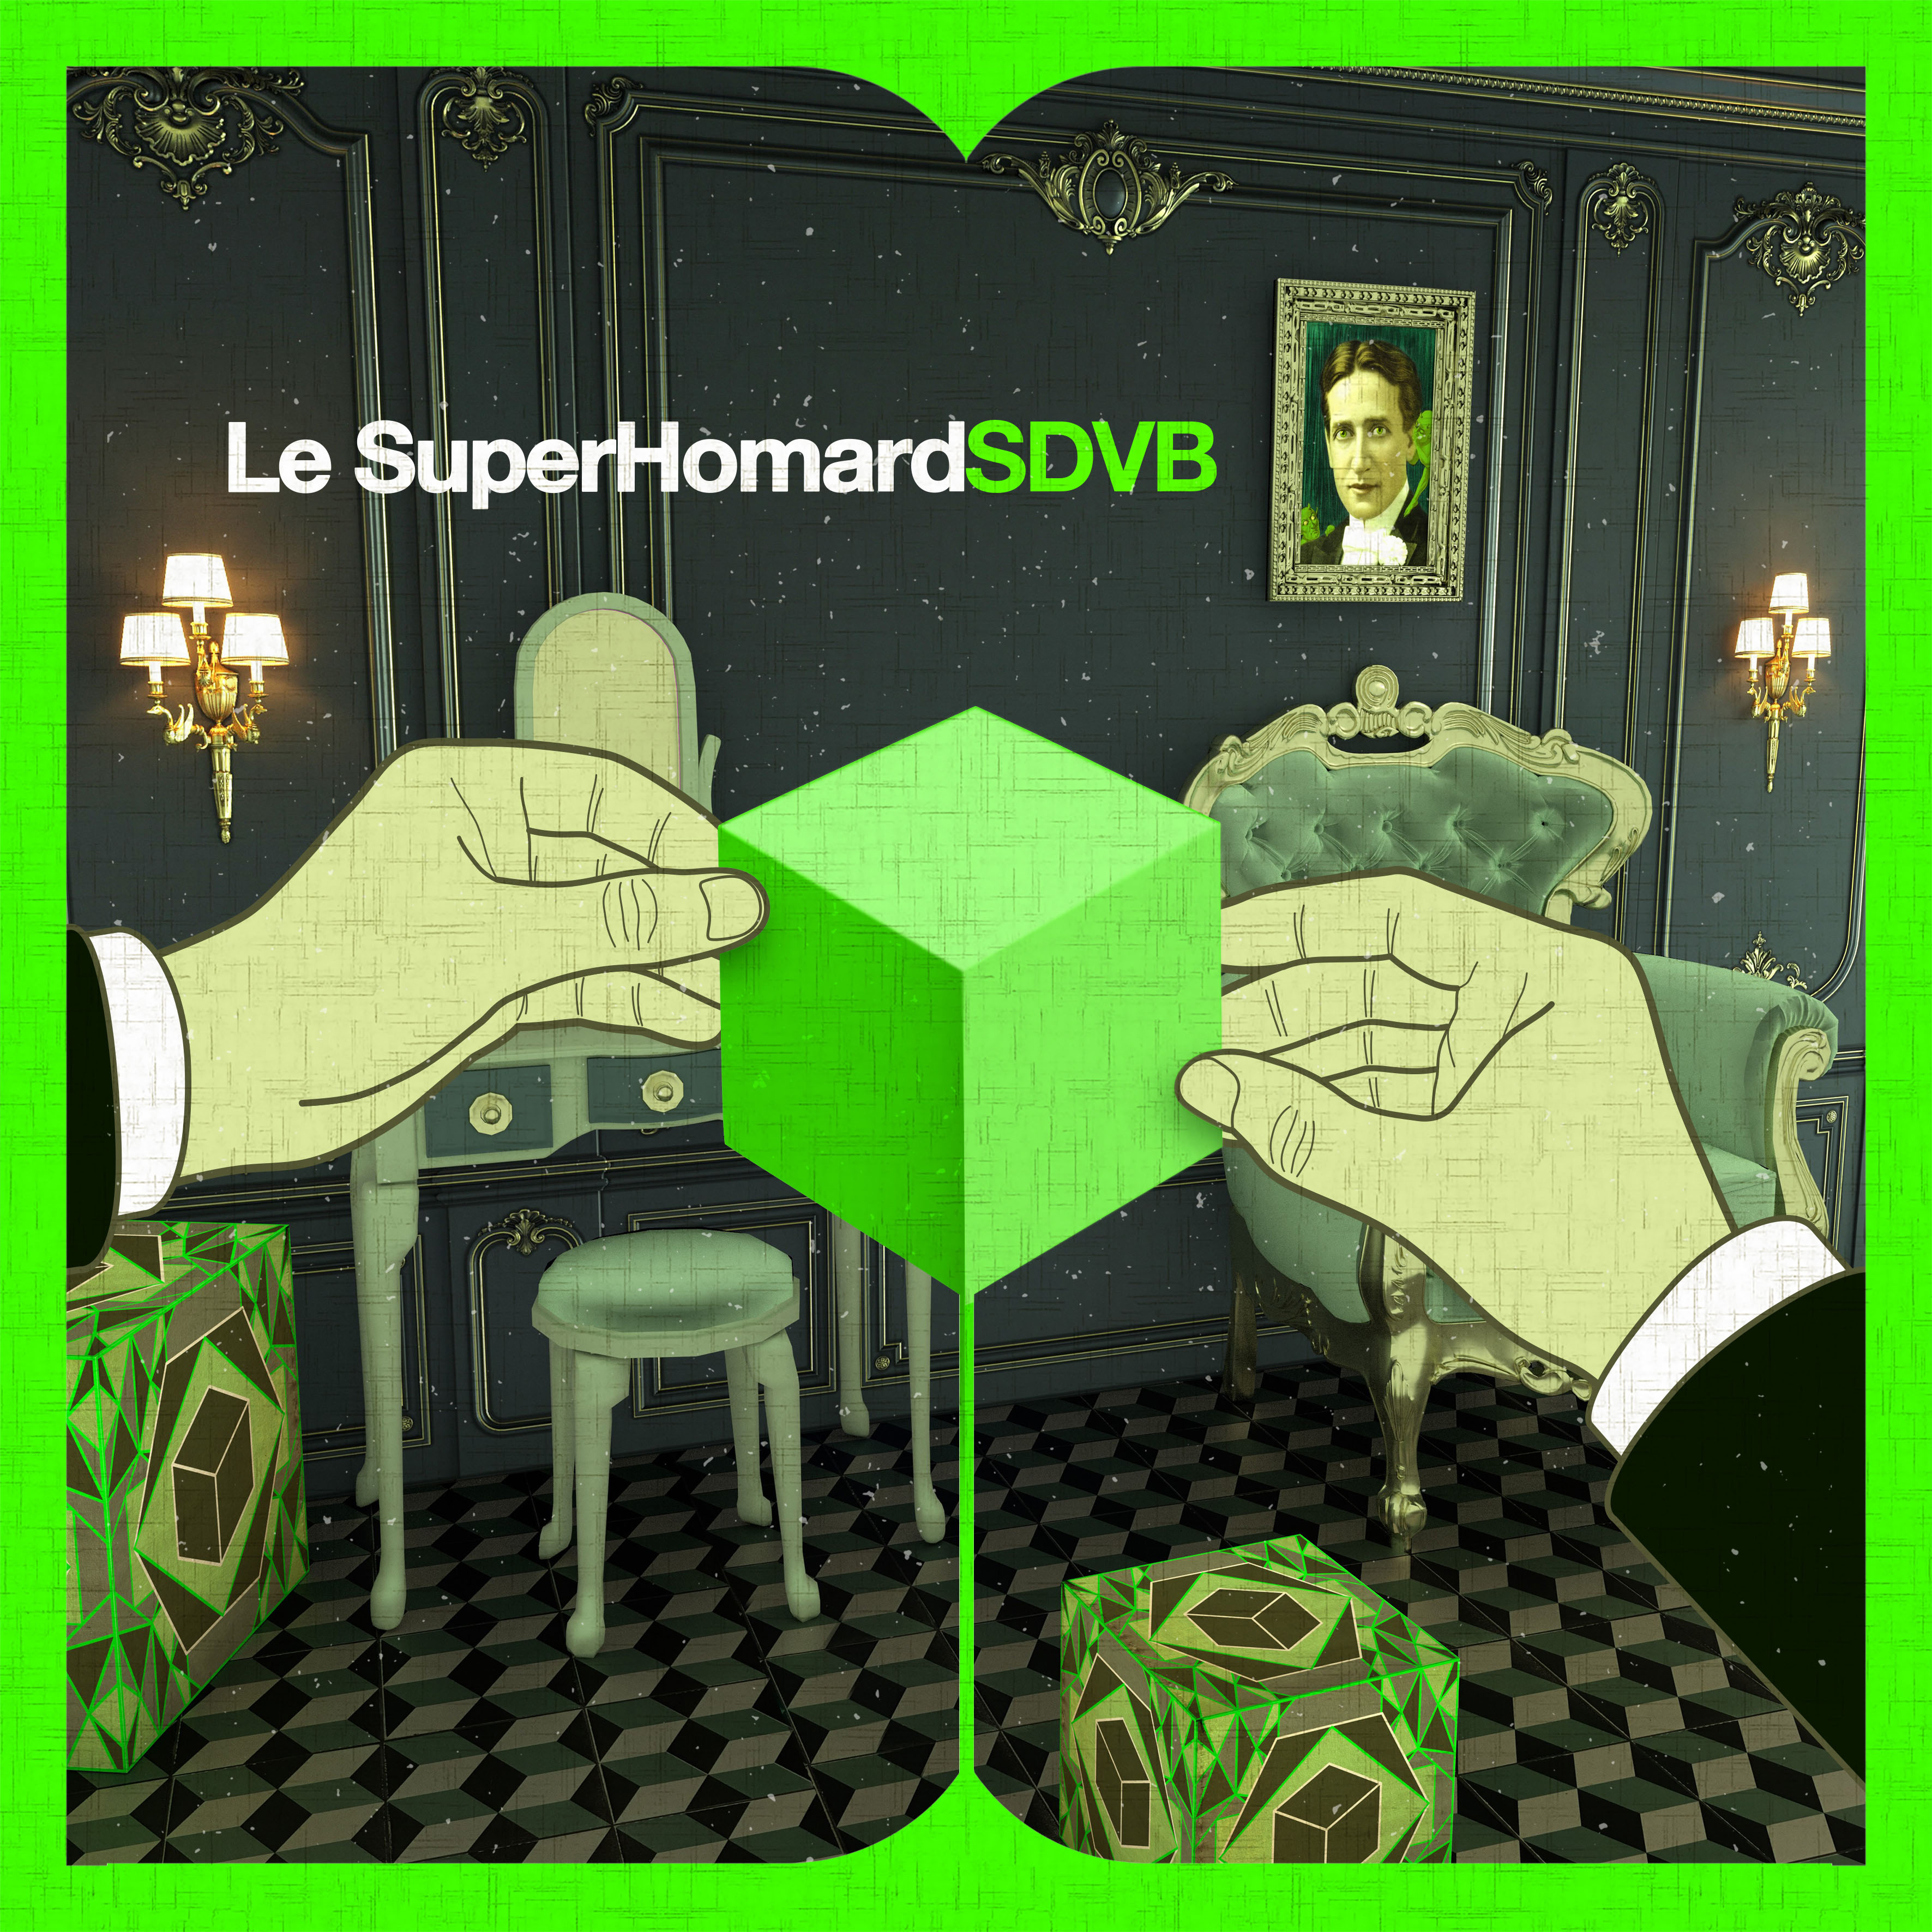 Le Superhomard "SDVB" Single Digital